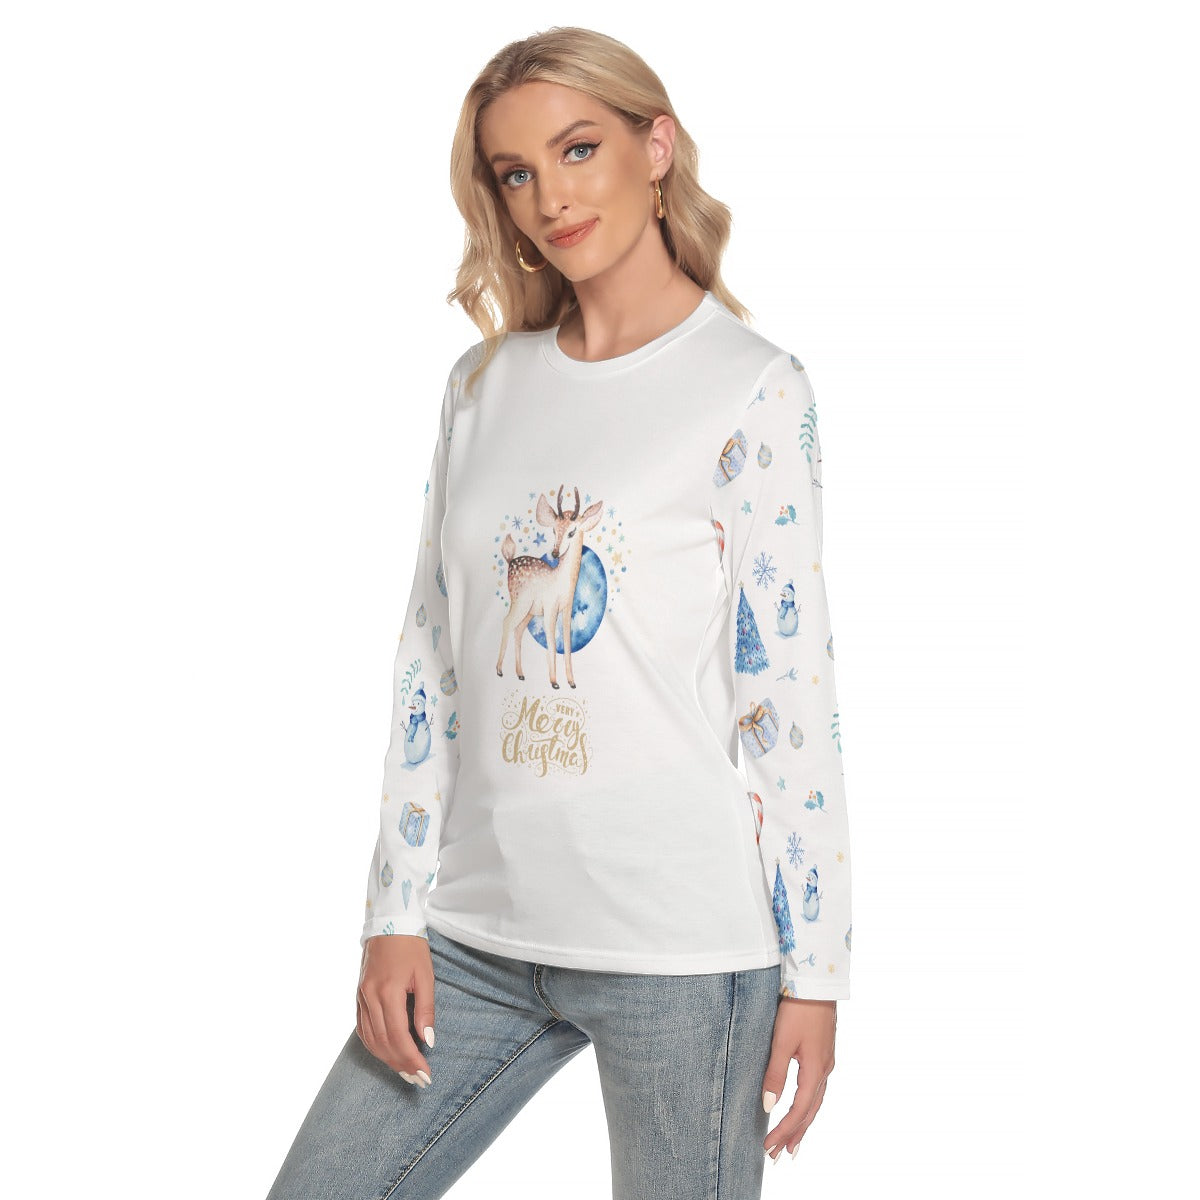 Women's Long Sleeve Christmas T-shirt - Blue Reindeer